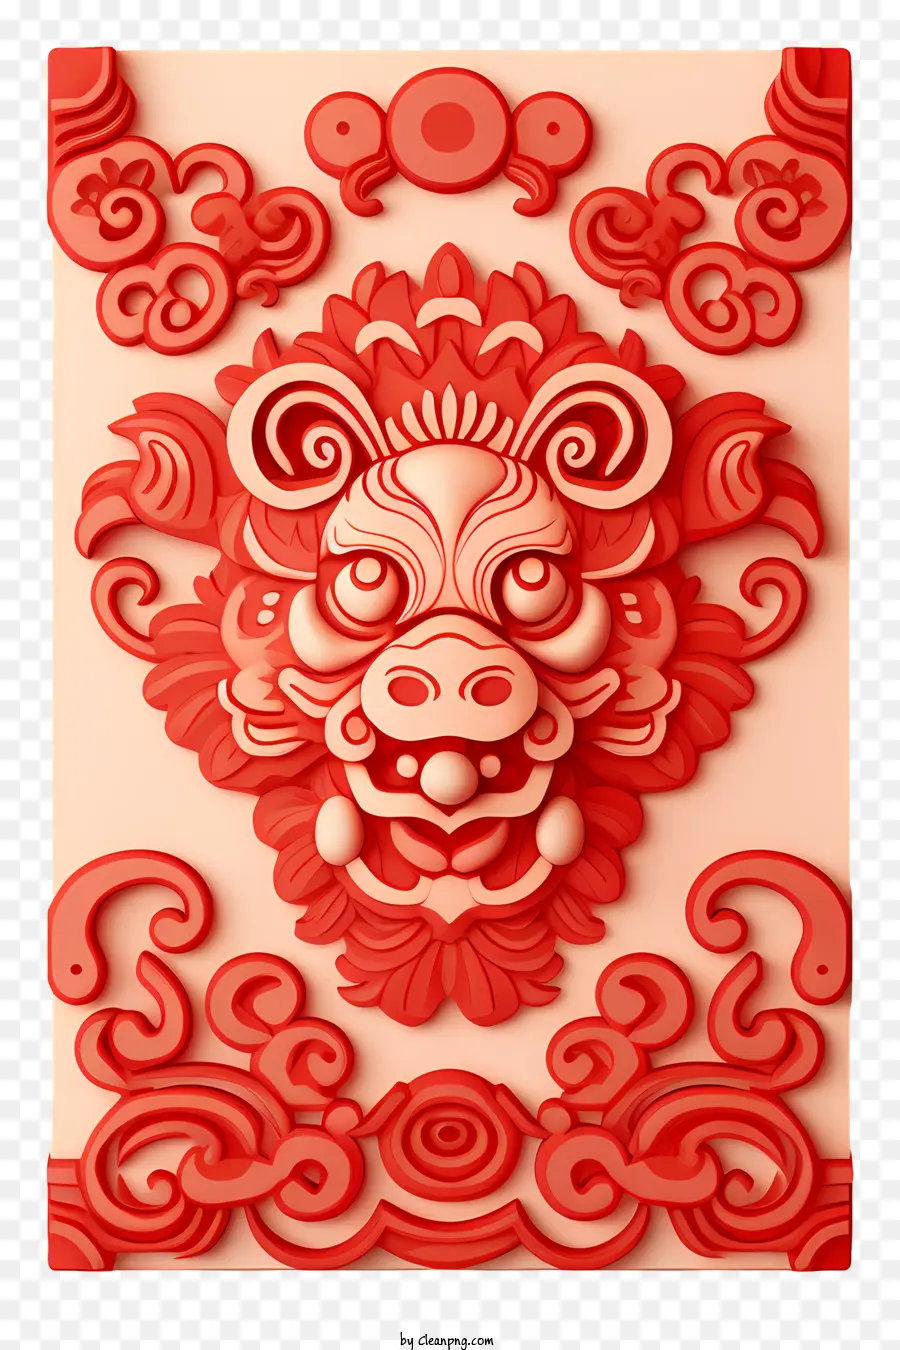 Tết nguyên đán - Thiết kế rồng đỏ phức tạp toát ra sự bình yên và thanh thản